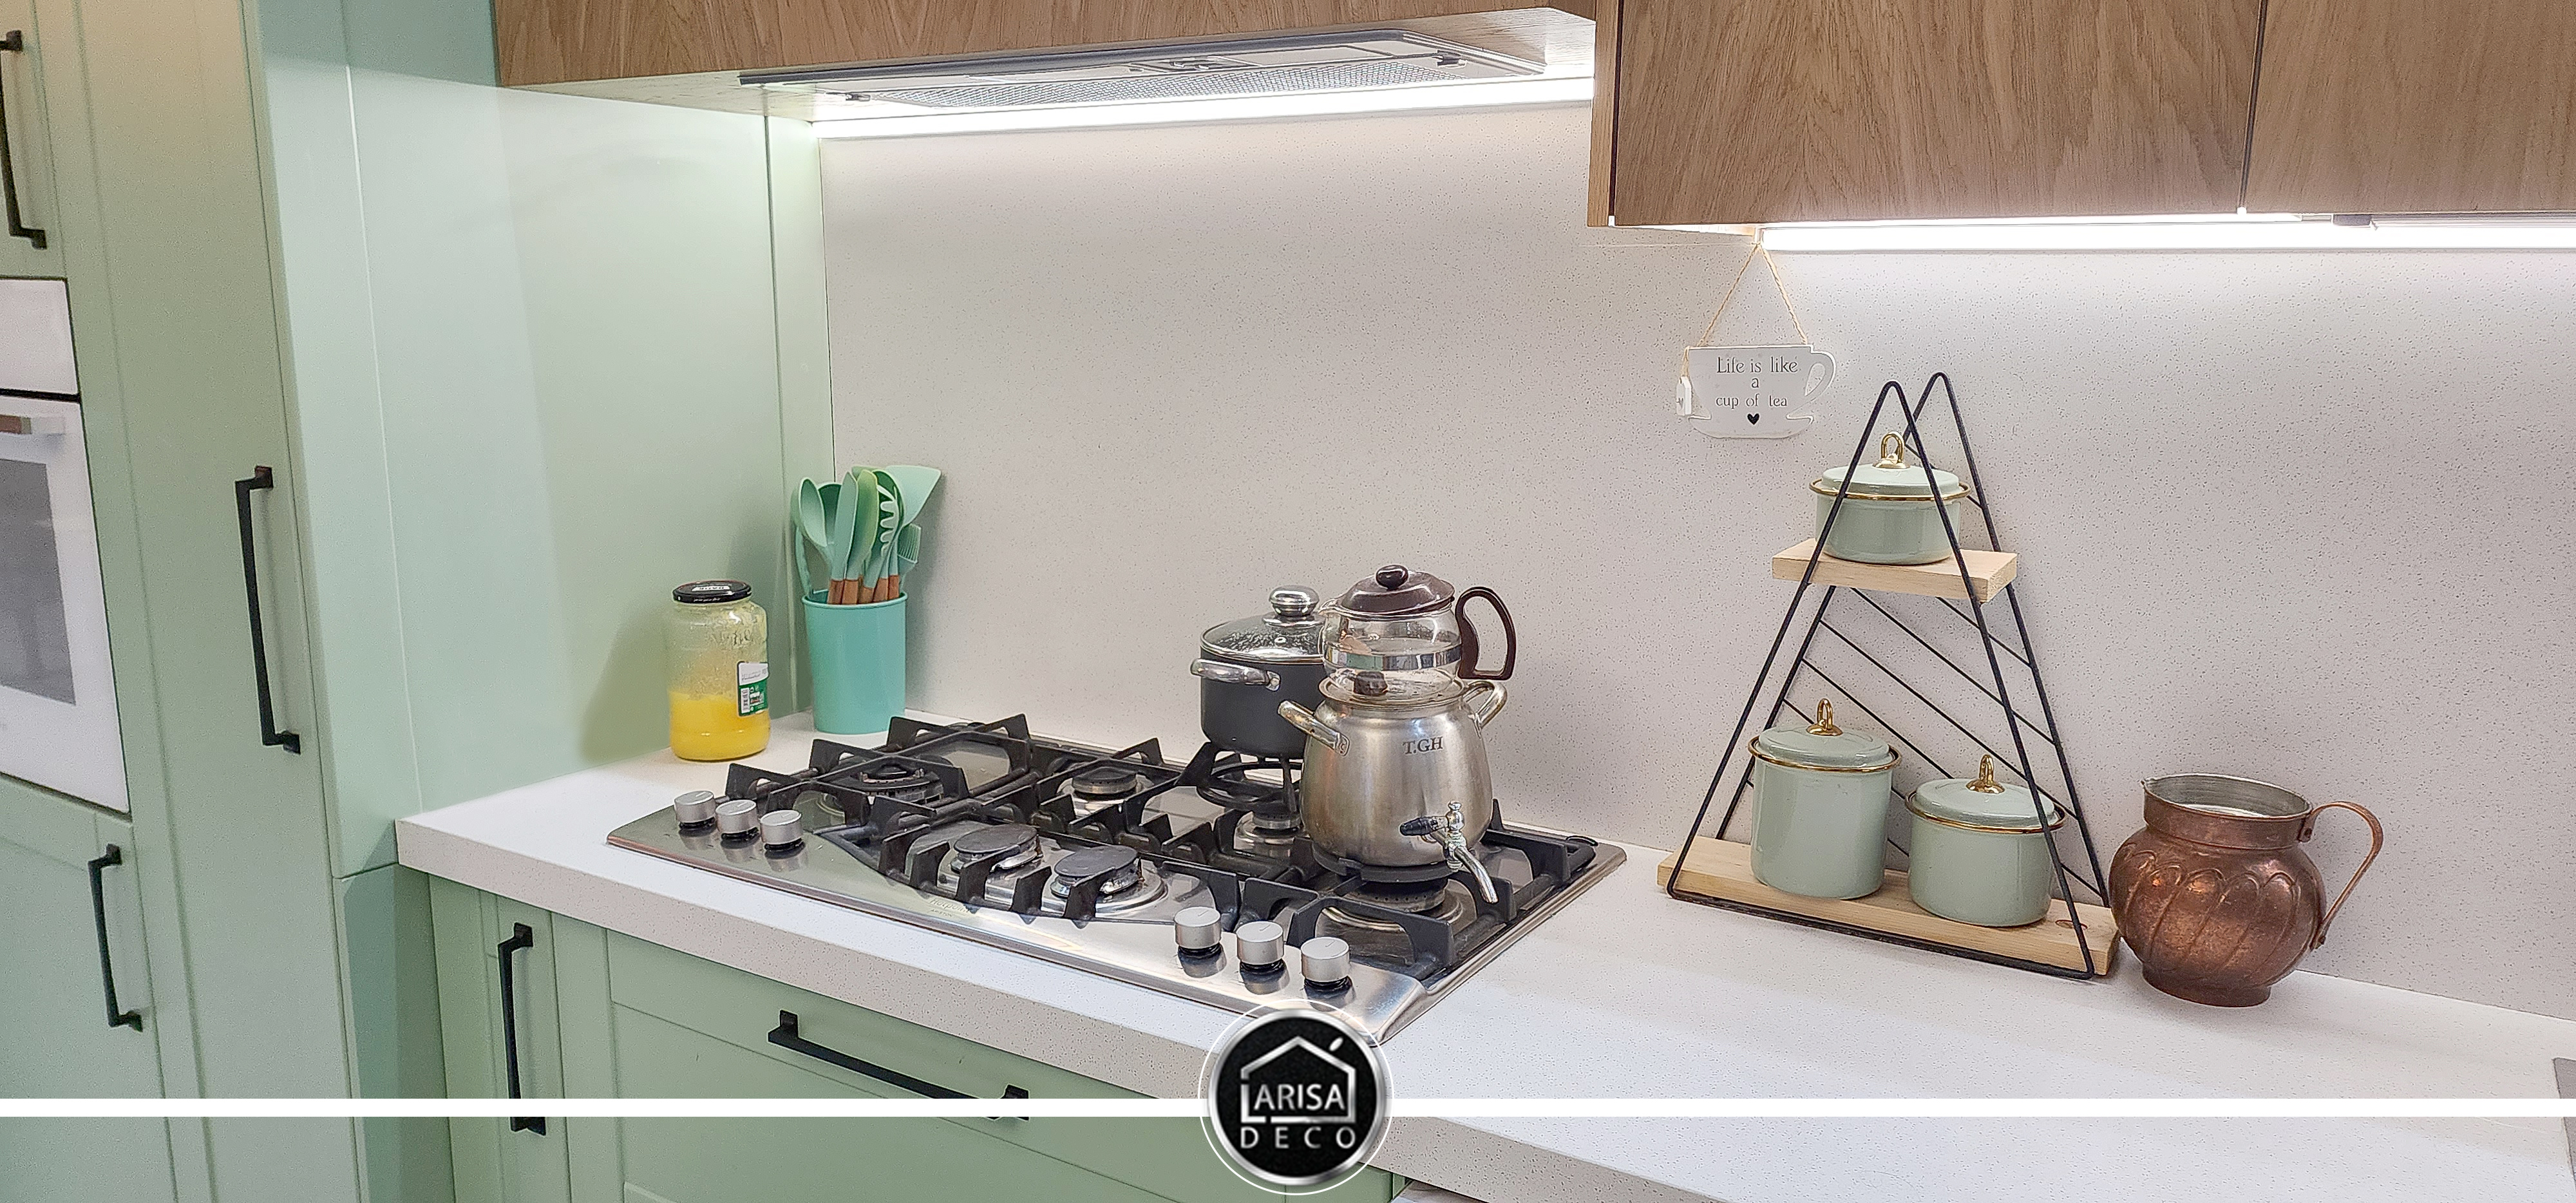 لاریسا دکو بررسی می کند: استفاده از علم روانشناسی در طراحی کابینت آشپزخانه